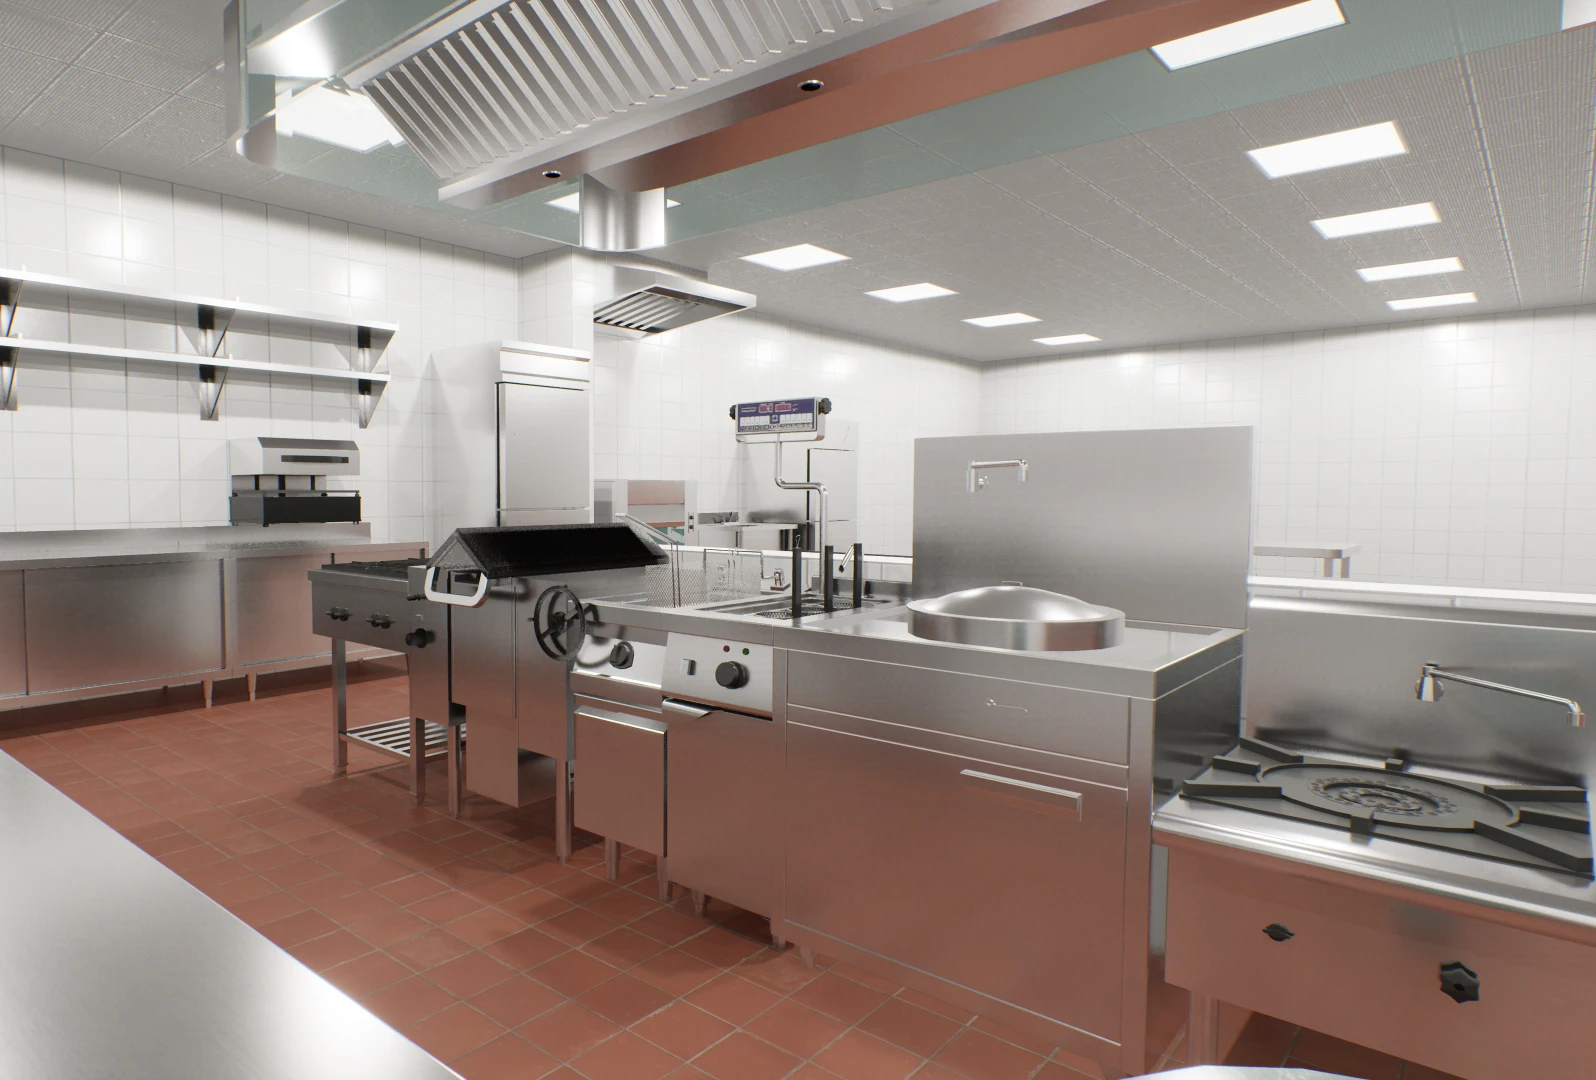 Commercial Kitchen Projec/kitchen Engineering Design/ Kitchen Equipment